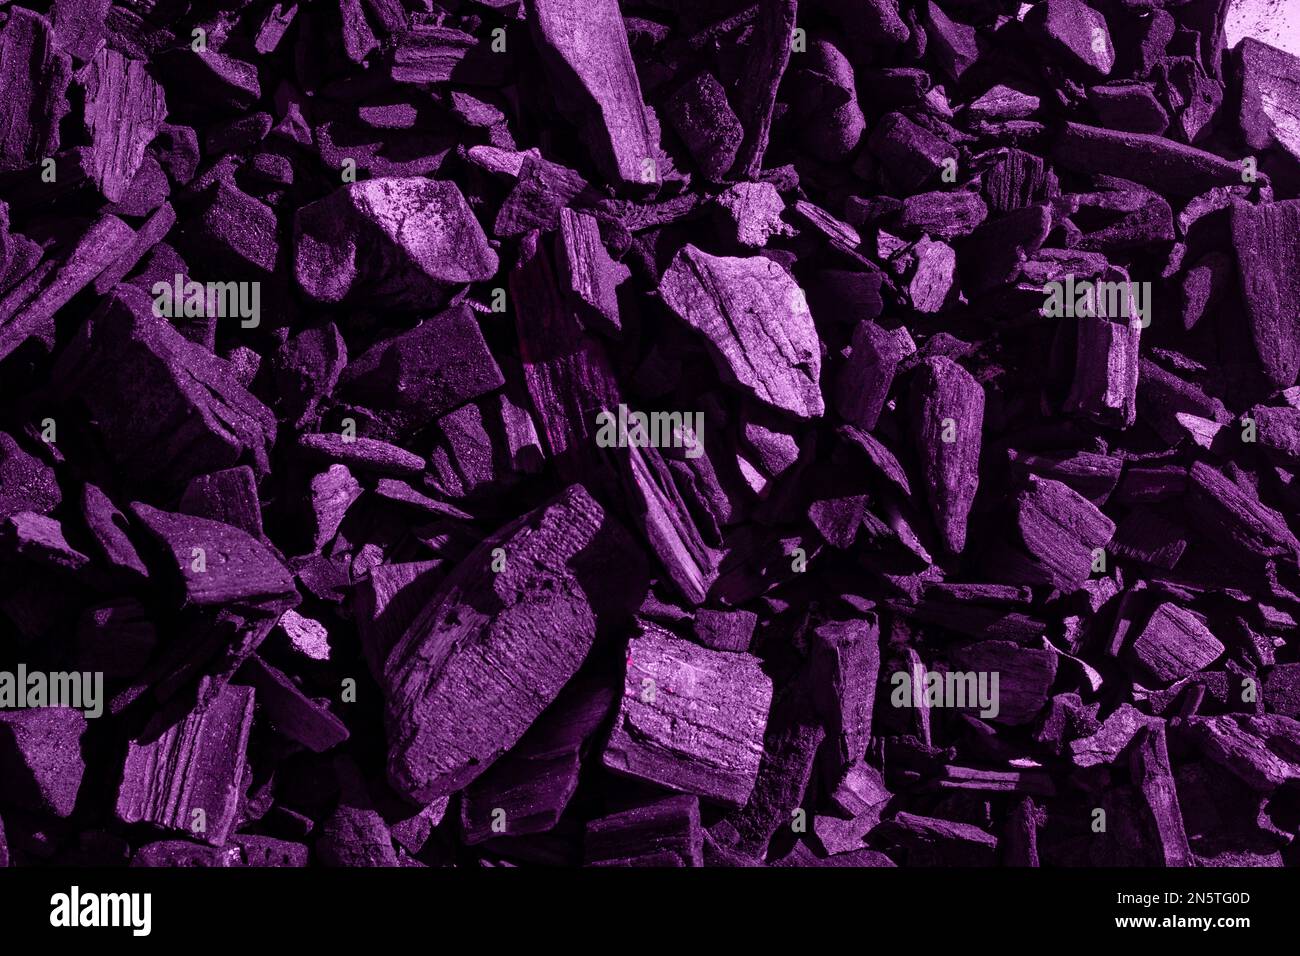 Natürliche schwarze Holzkohle mit violettem Farbton. Industriekohle. Schwarzer Kohlehaufen, schwarze Farbe, Kohleteile unterschiedlicher Größe. Stockfoto